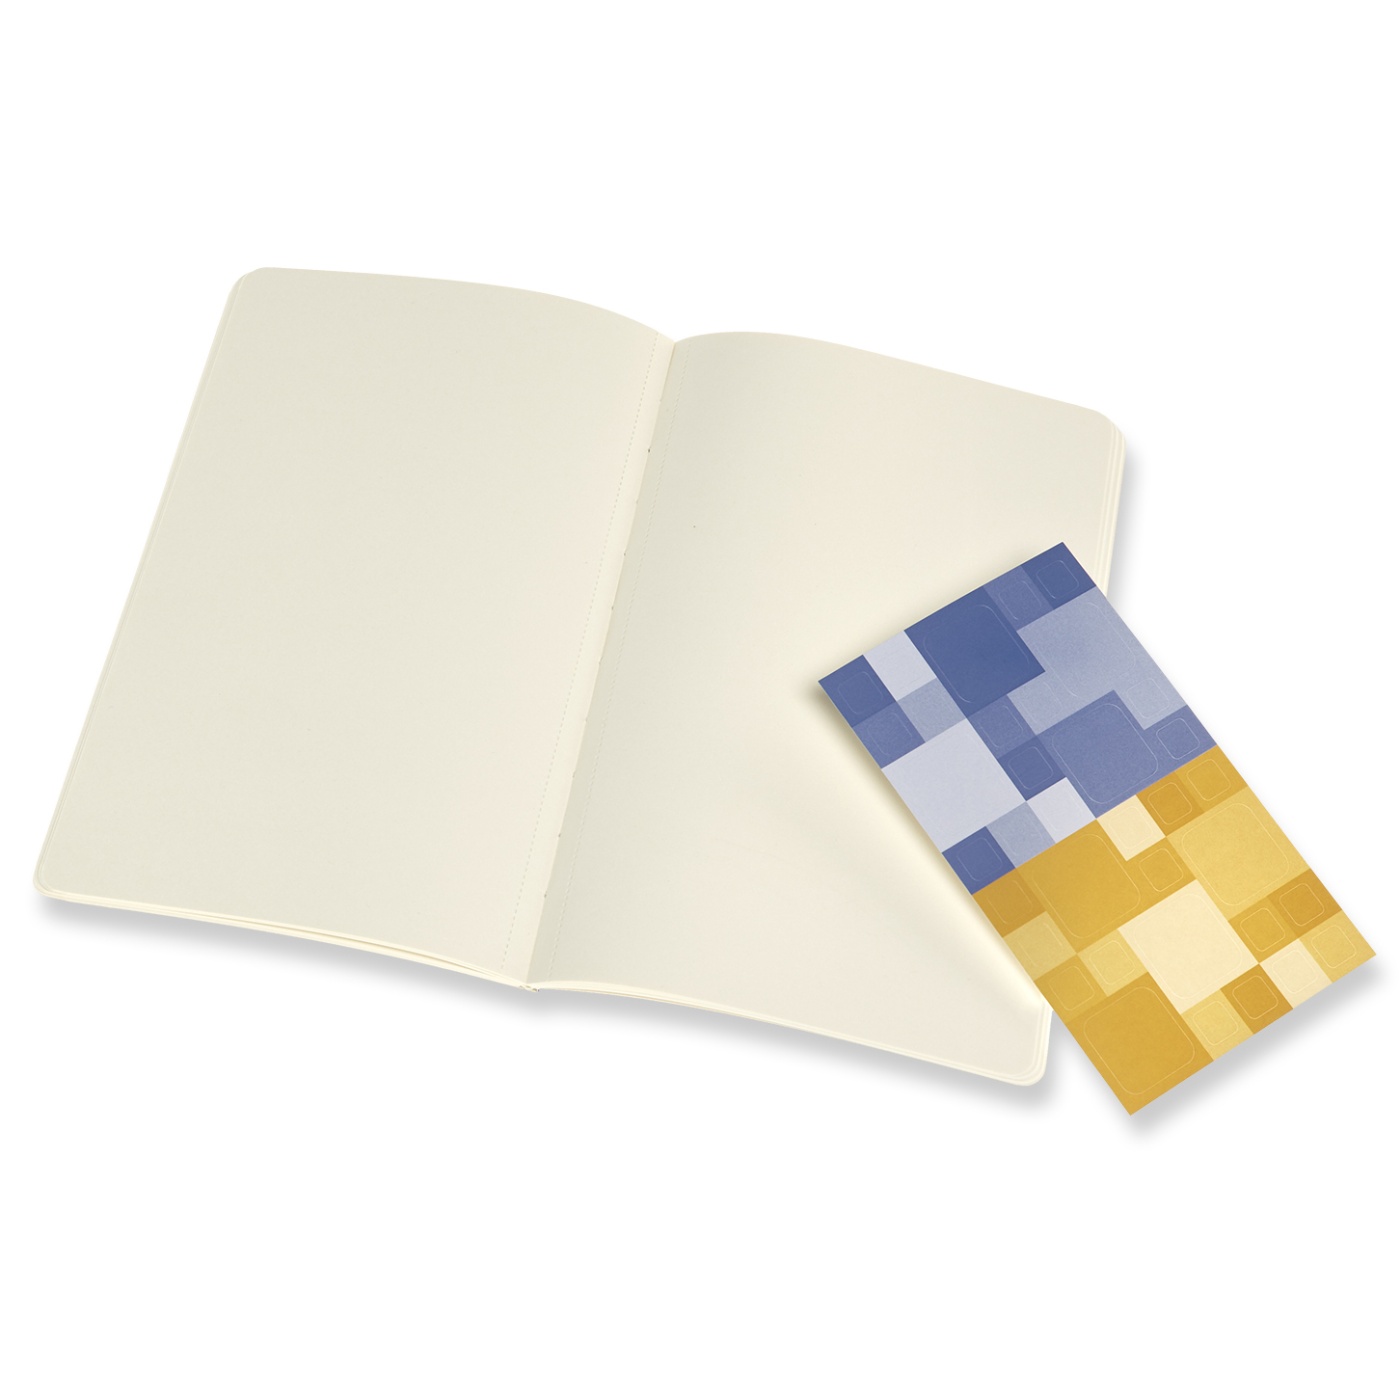 Volant Large Blue/Yellow in de groep Papier & Blokken / Schrijven en noteren / Notitieboeken bij Voorcrea (100345_r)